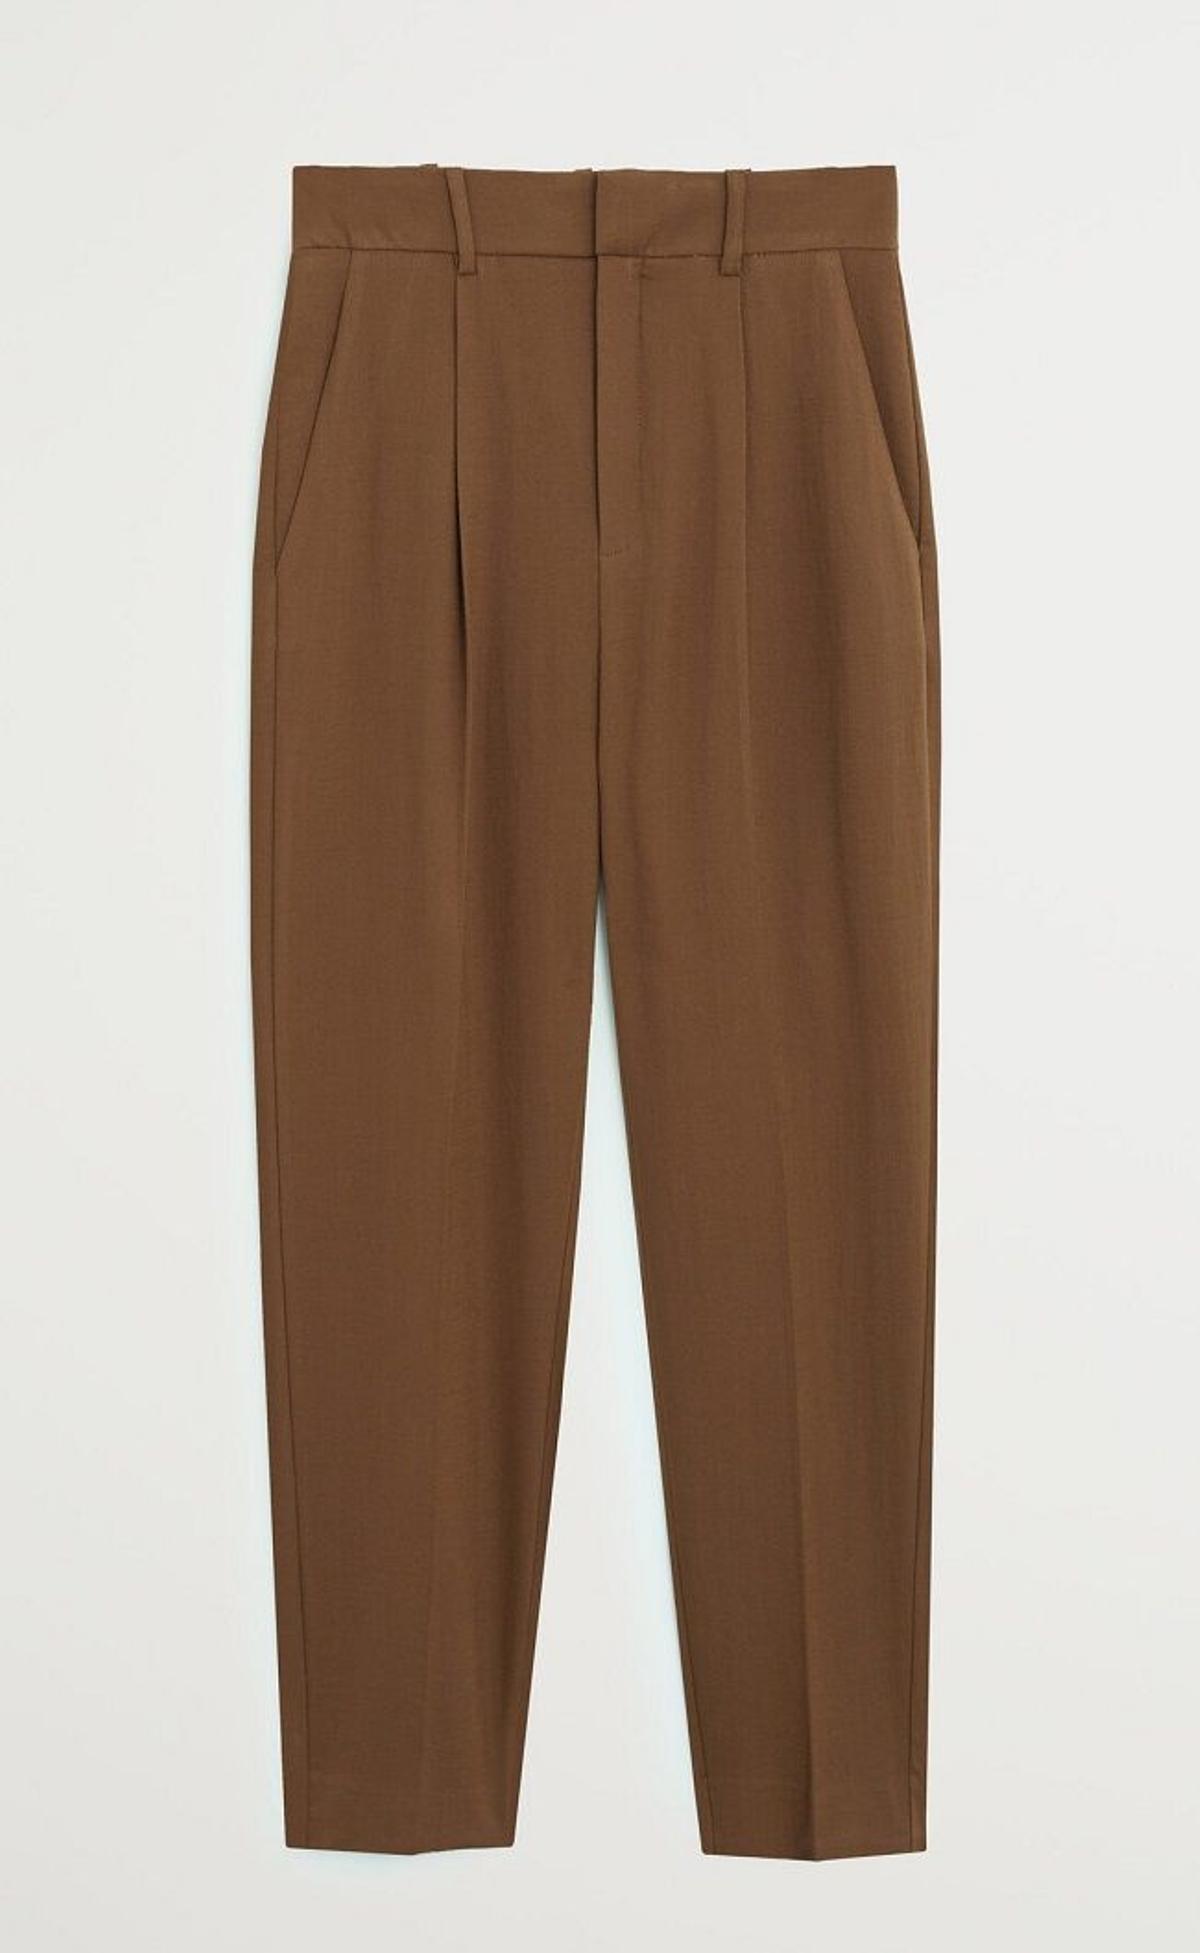 Pantalones de pinza en marrón chocolate de Mango